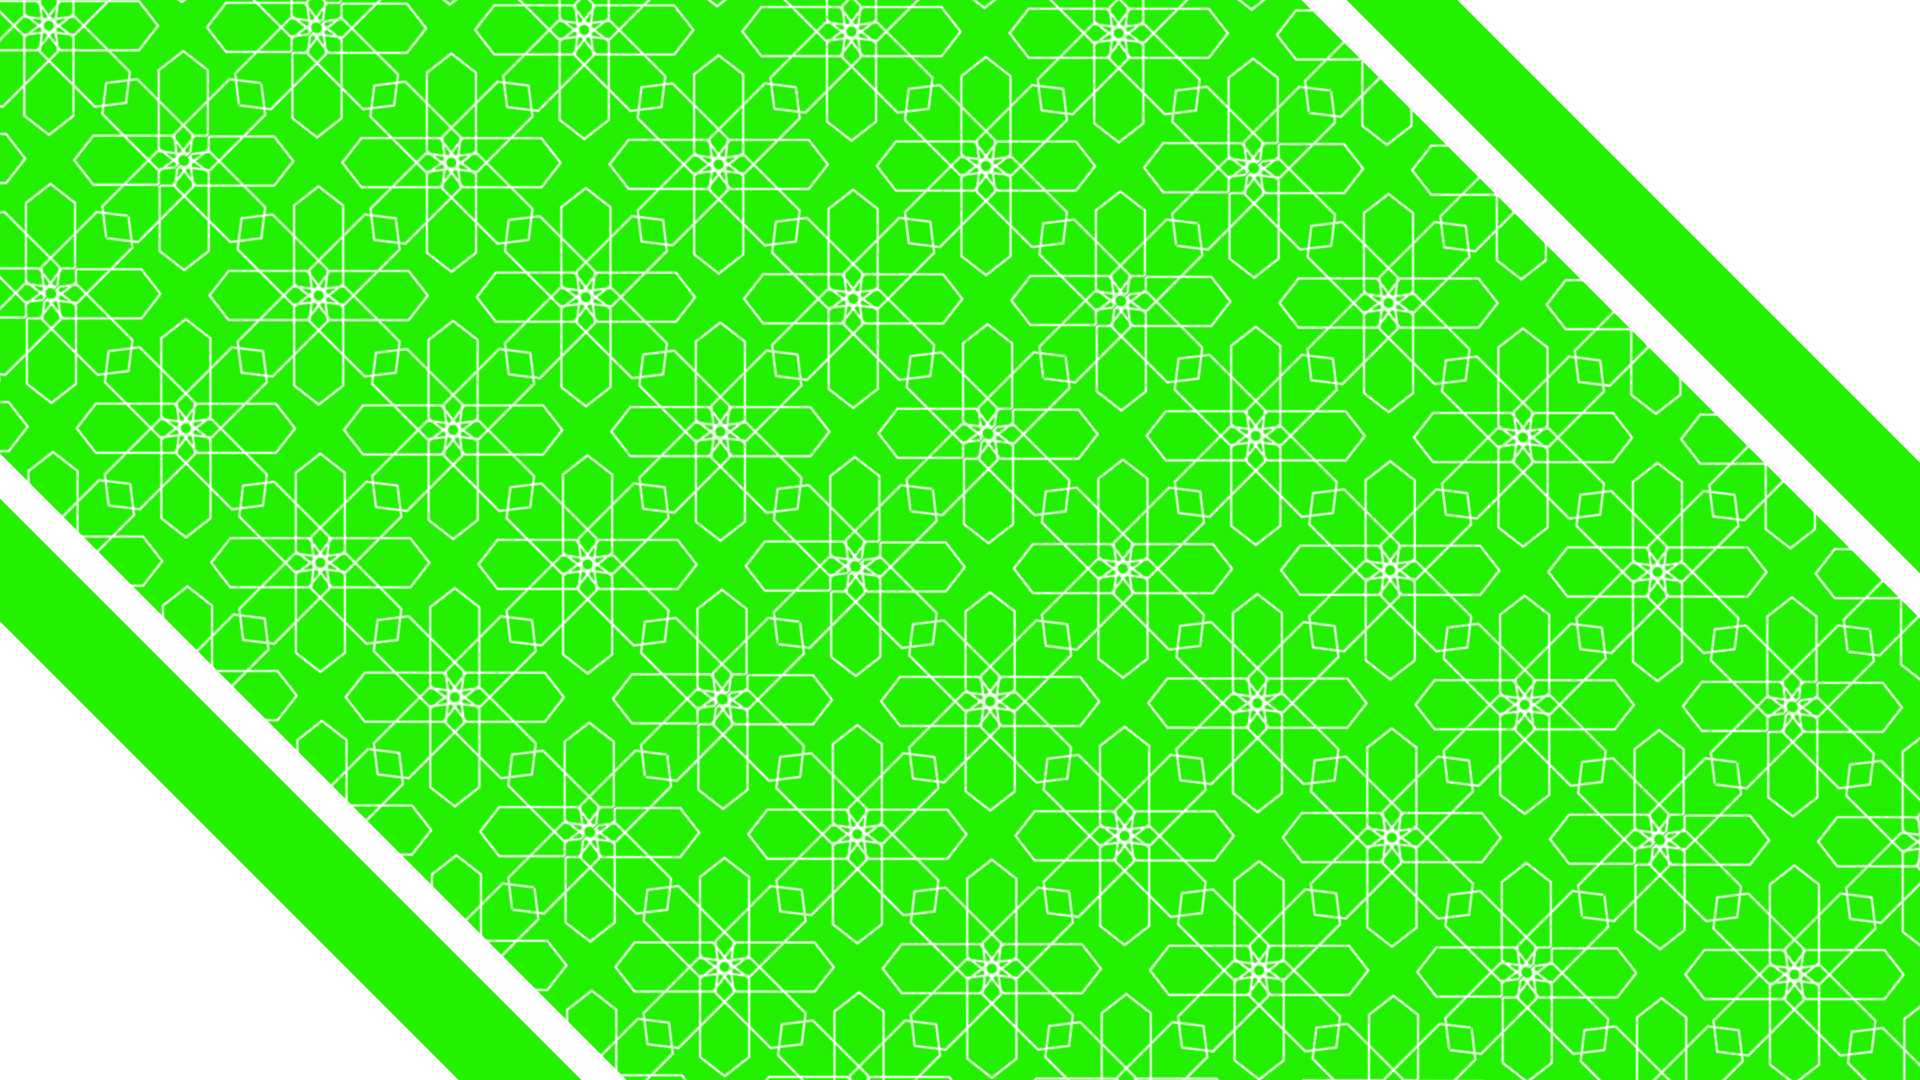 كرومات خضراء للمونتاج كروما زخارف متحركة للتصميم خلفيات منوعة جاهزة